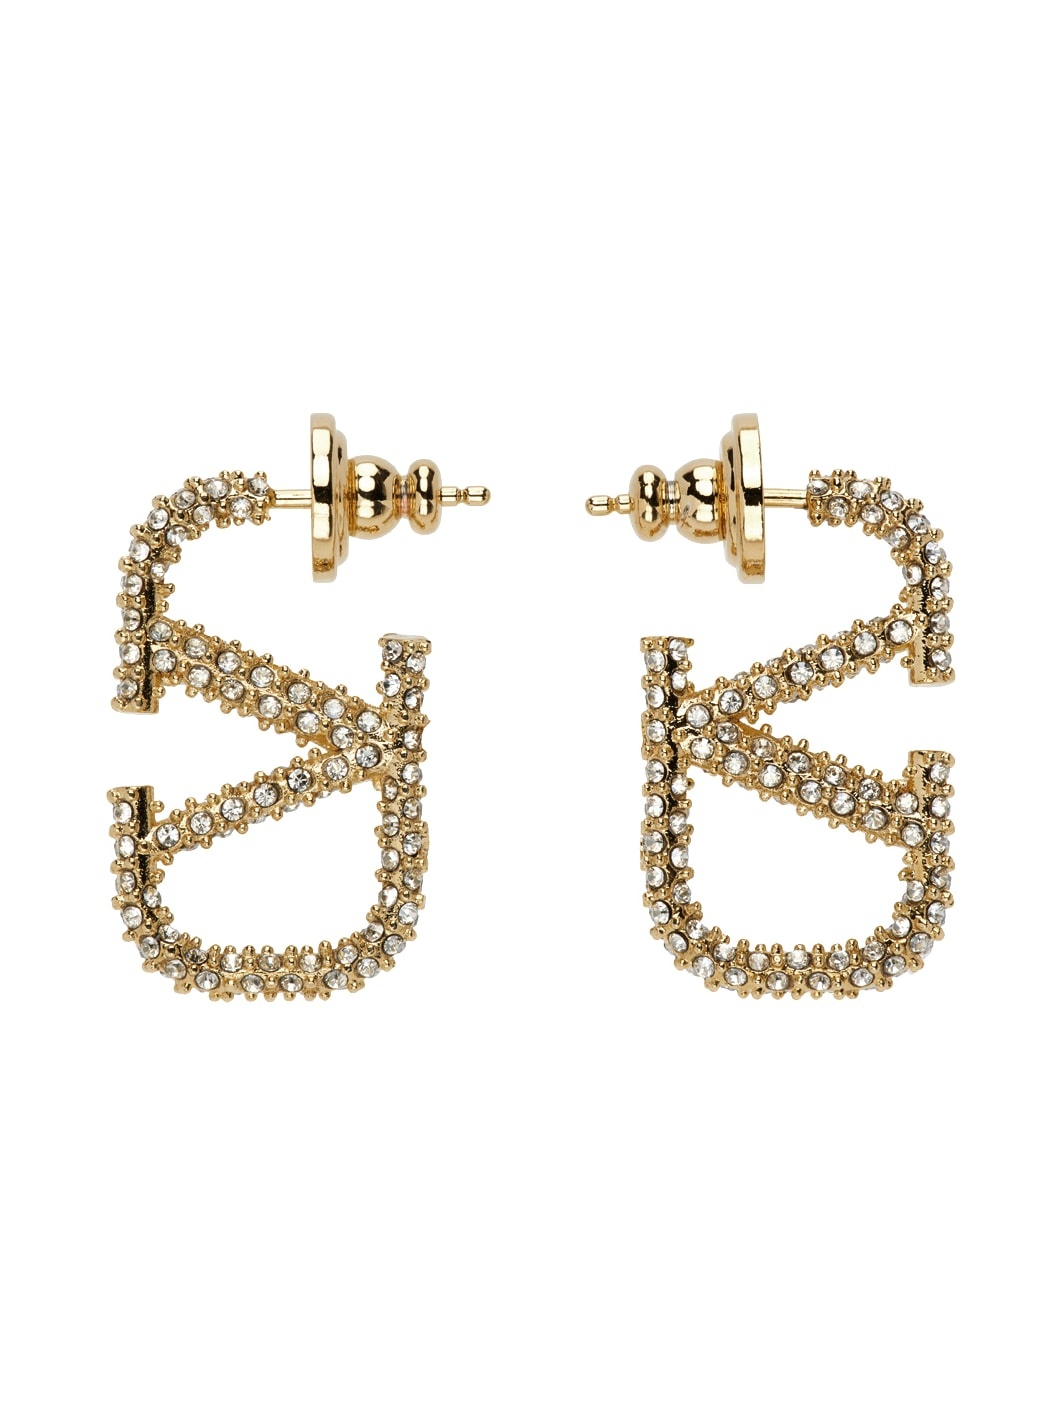 Gold Crystal VLogo Earrings - 1